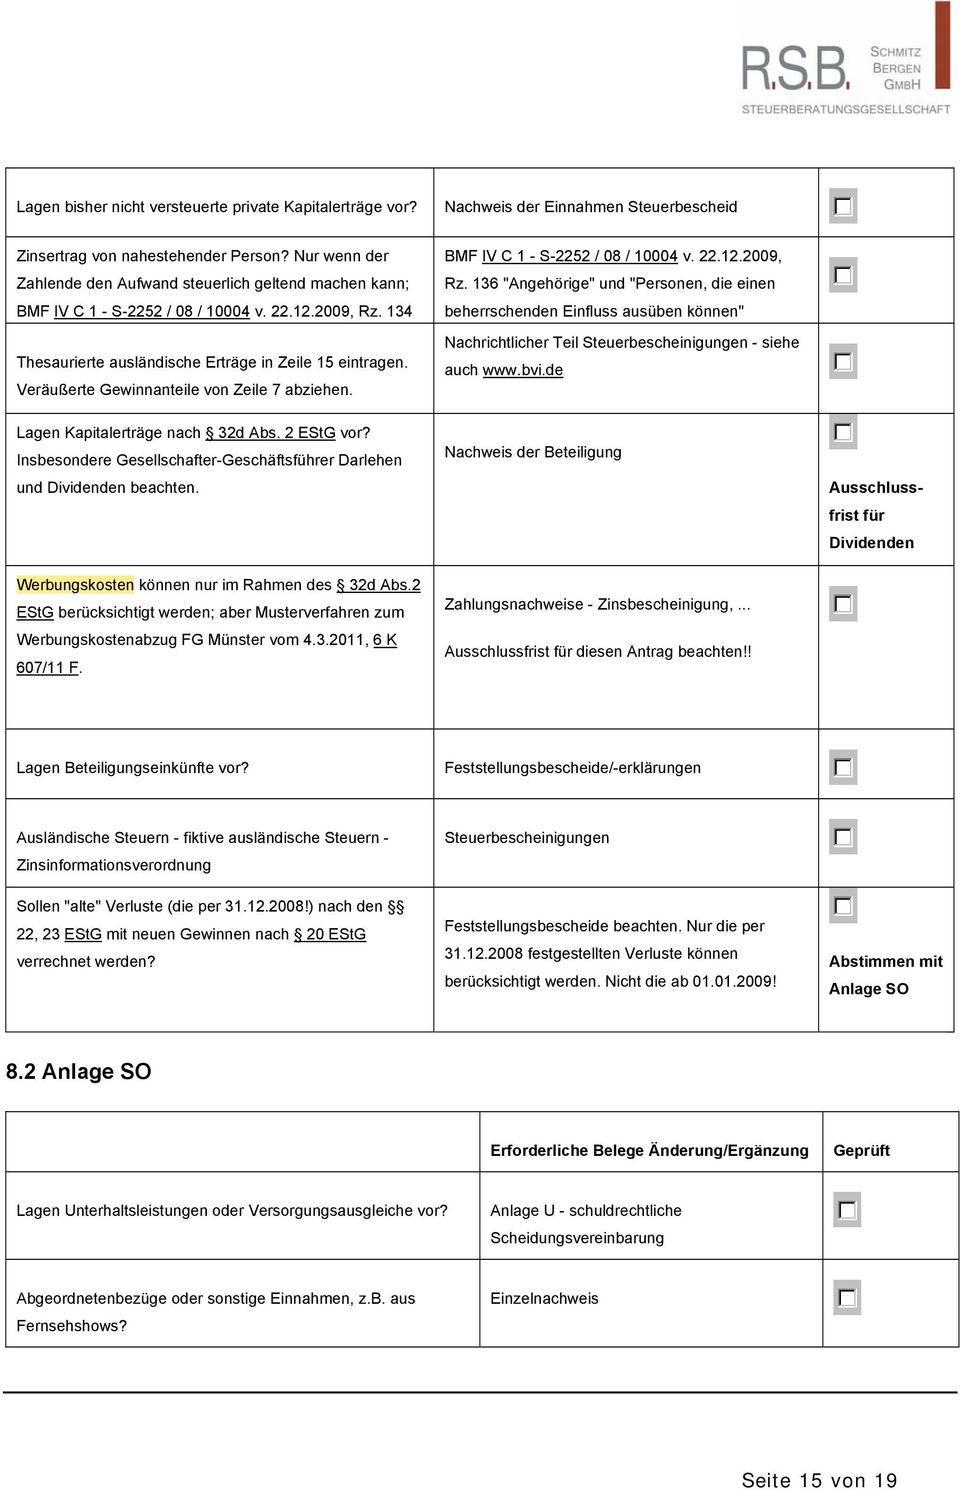 Veräußerte Gewinnanteile von Zeile 7 abziehen. BMF IV C 1 - S-2252 / 08 / 10004 v. 22.12.2009, Rz.